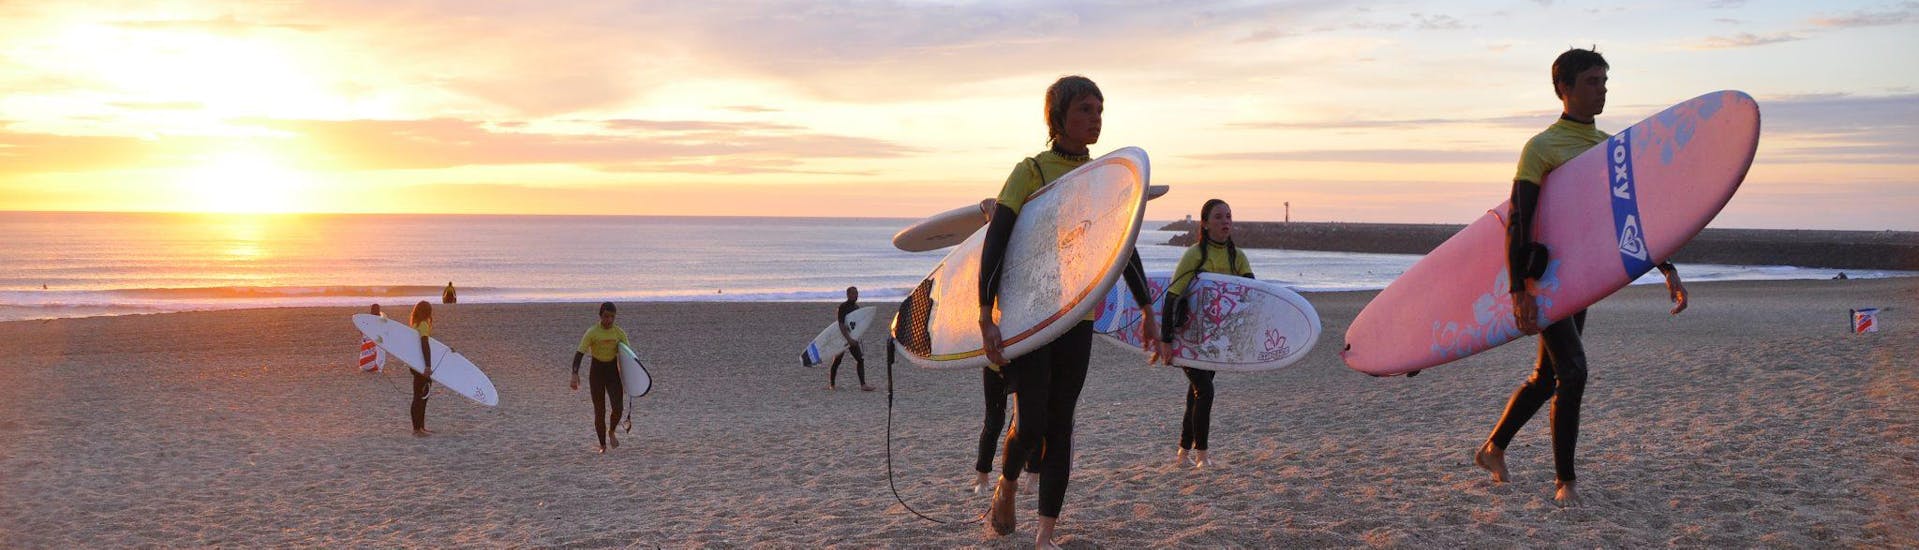 Lezioni di surf a Anglet da 7 anni per tutti i livelli.